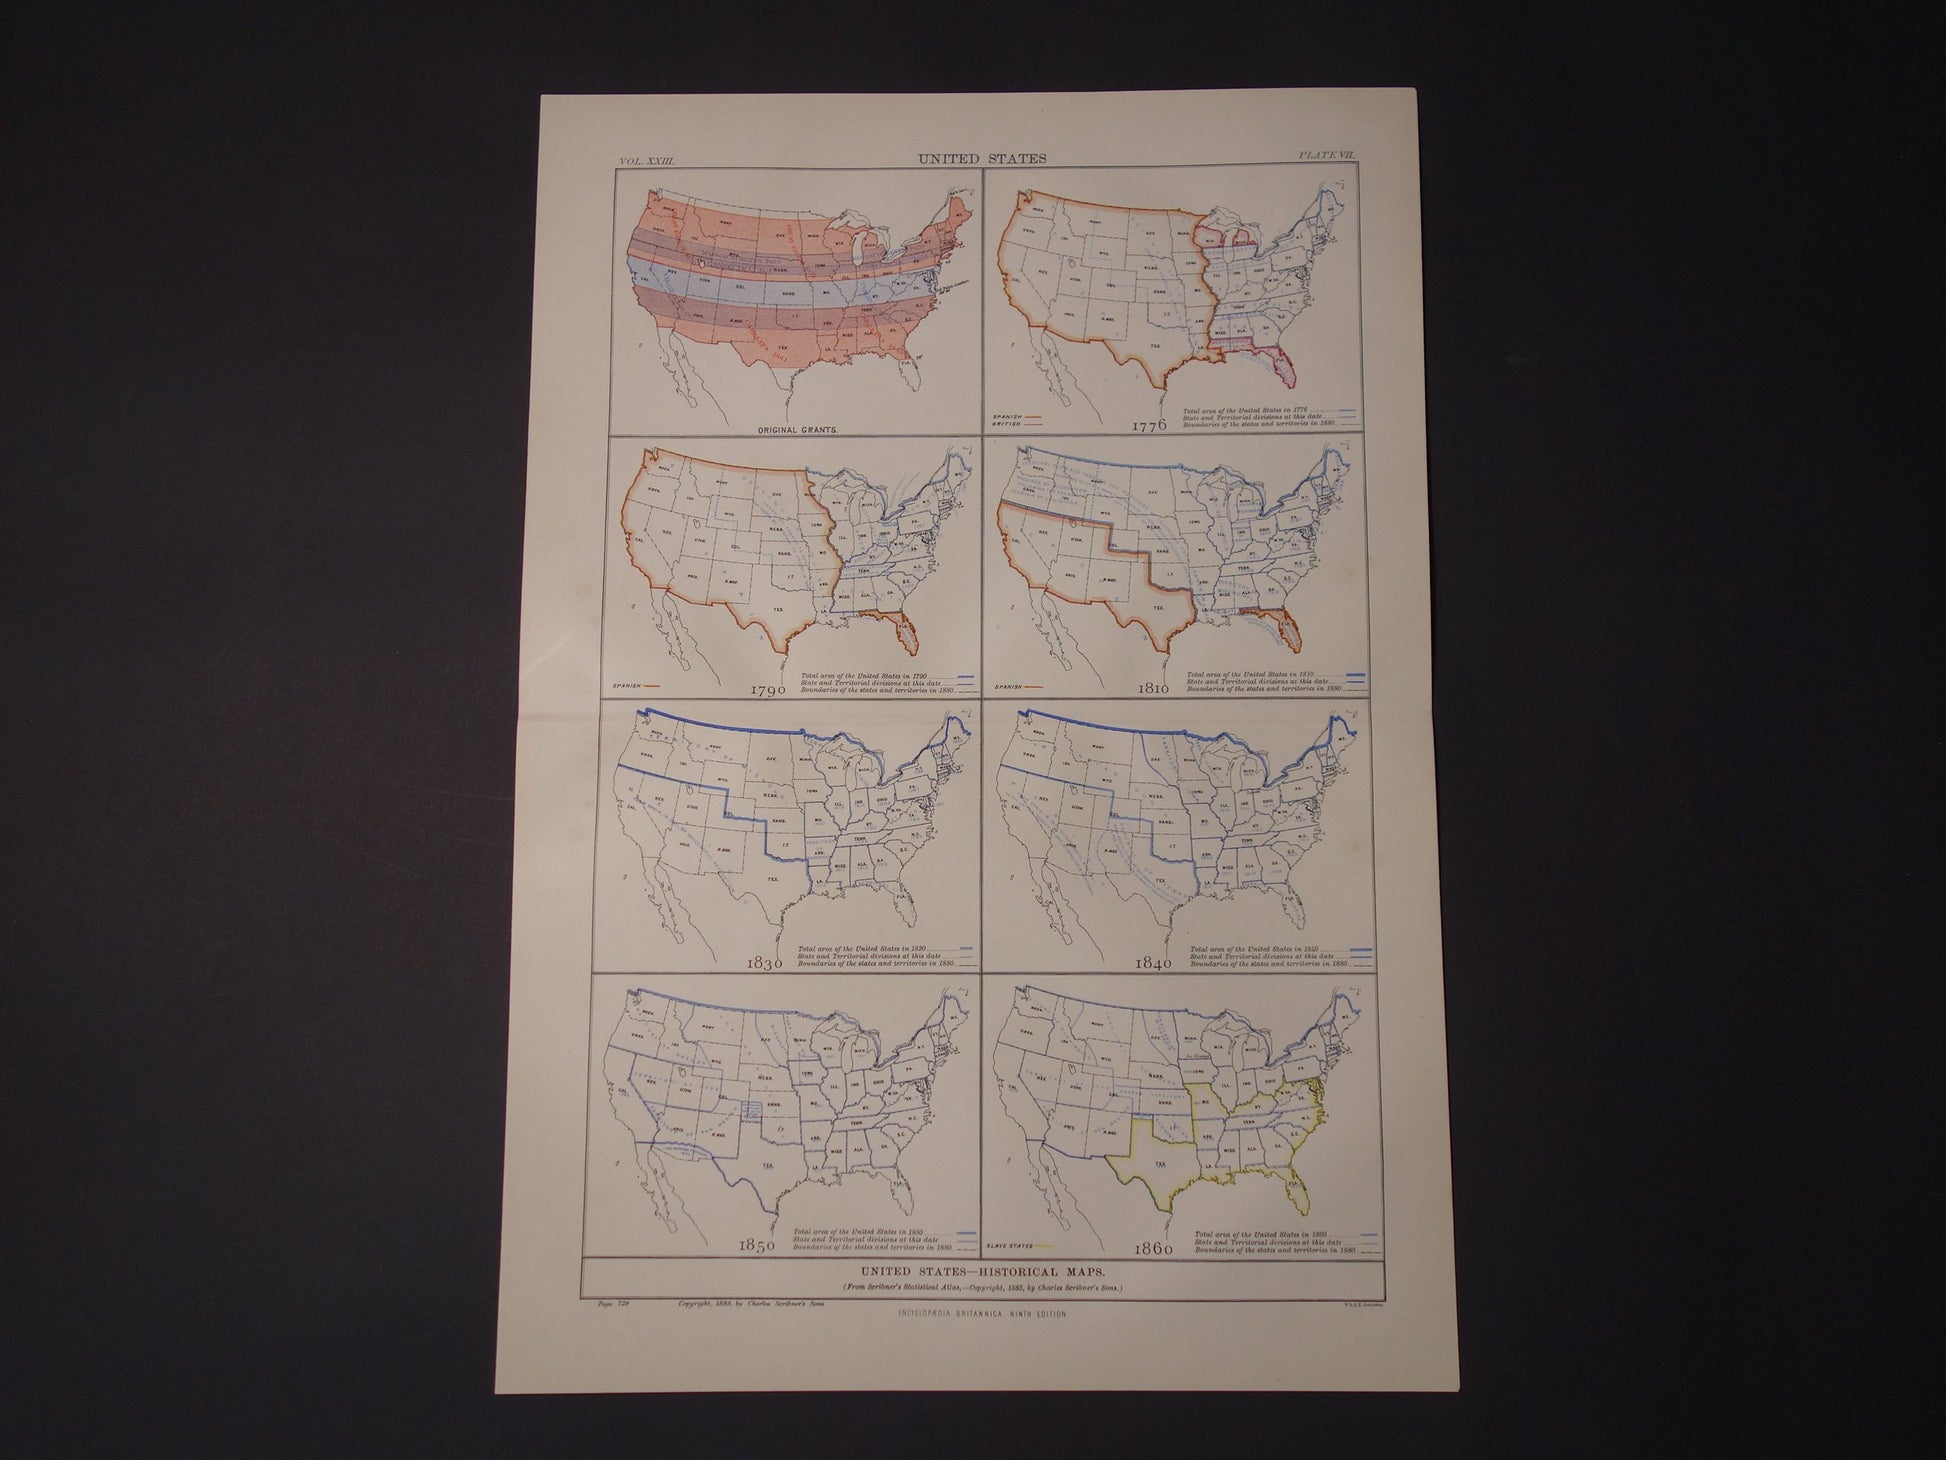 Geschiedenis van de VS Verenigde Staten in kaarten periode 1776 tot 1860